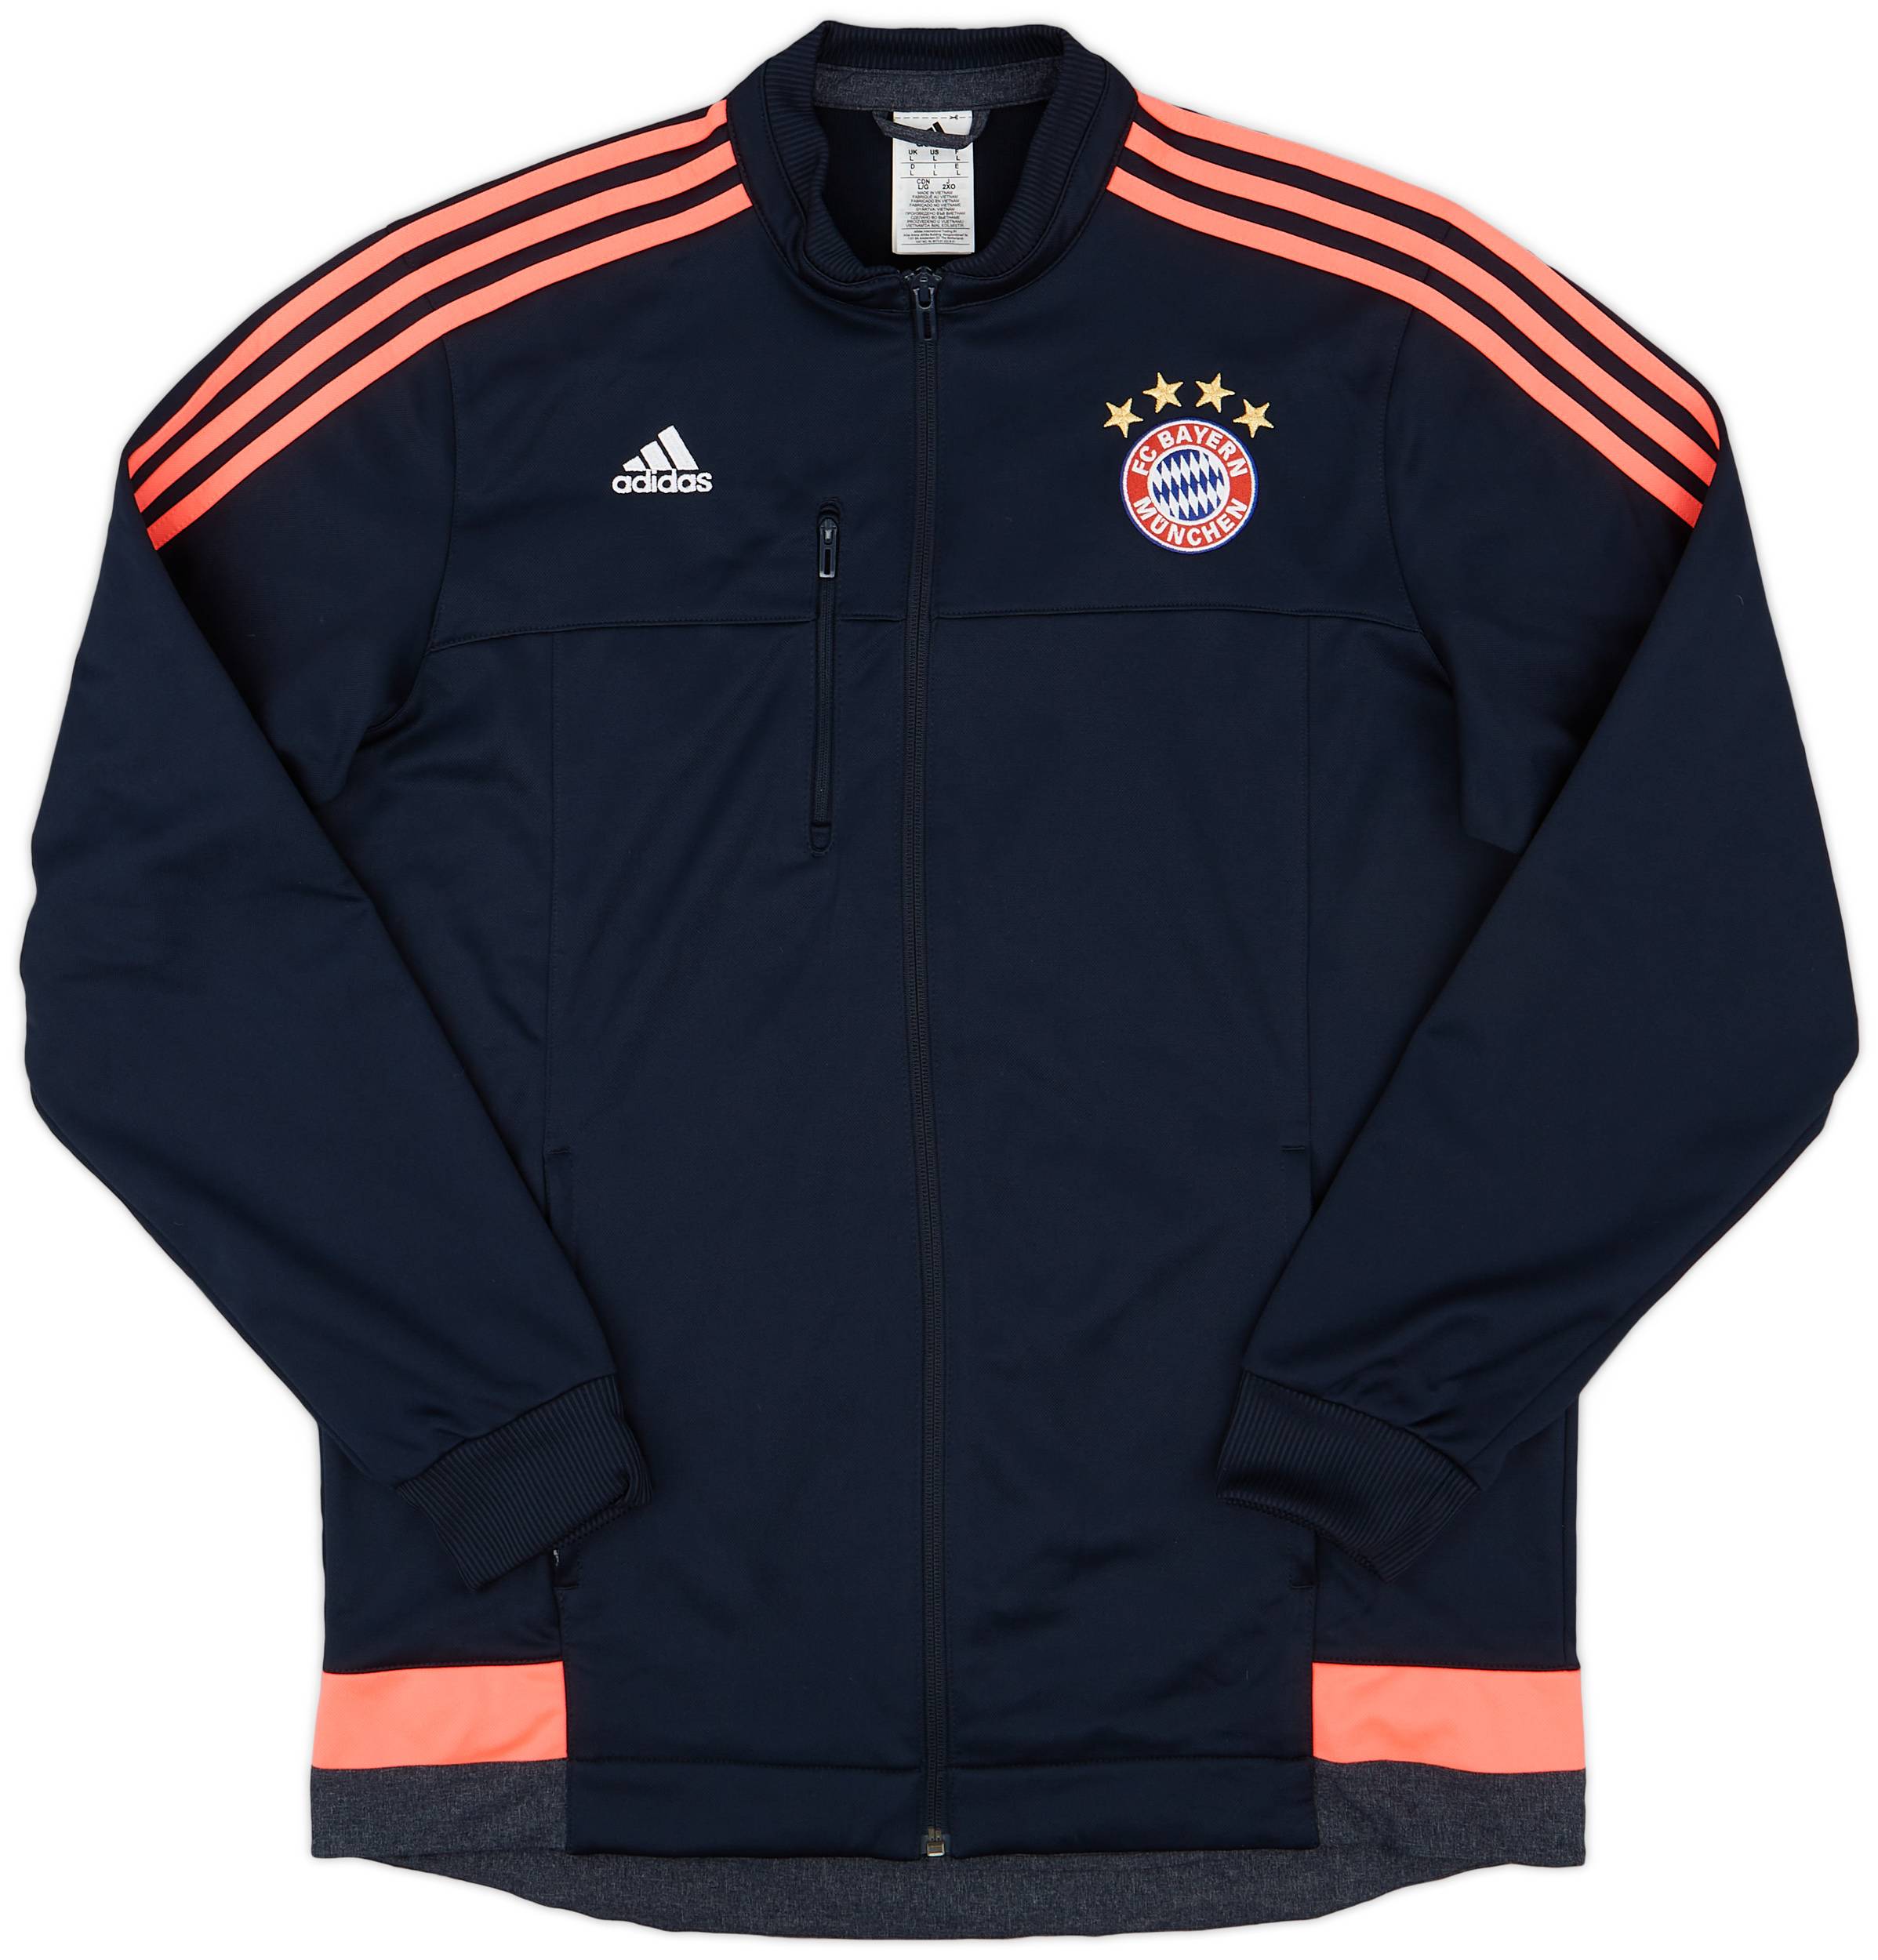 2015-16 Bayern Munich adidas Anthem Jacket - 9/10 - (L)